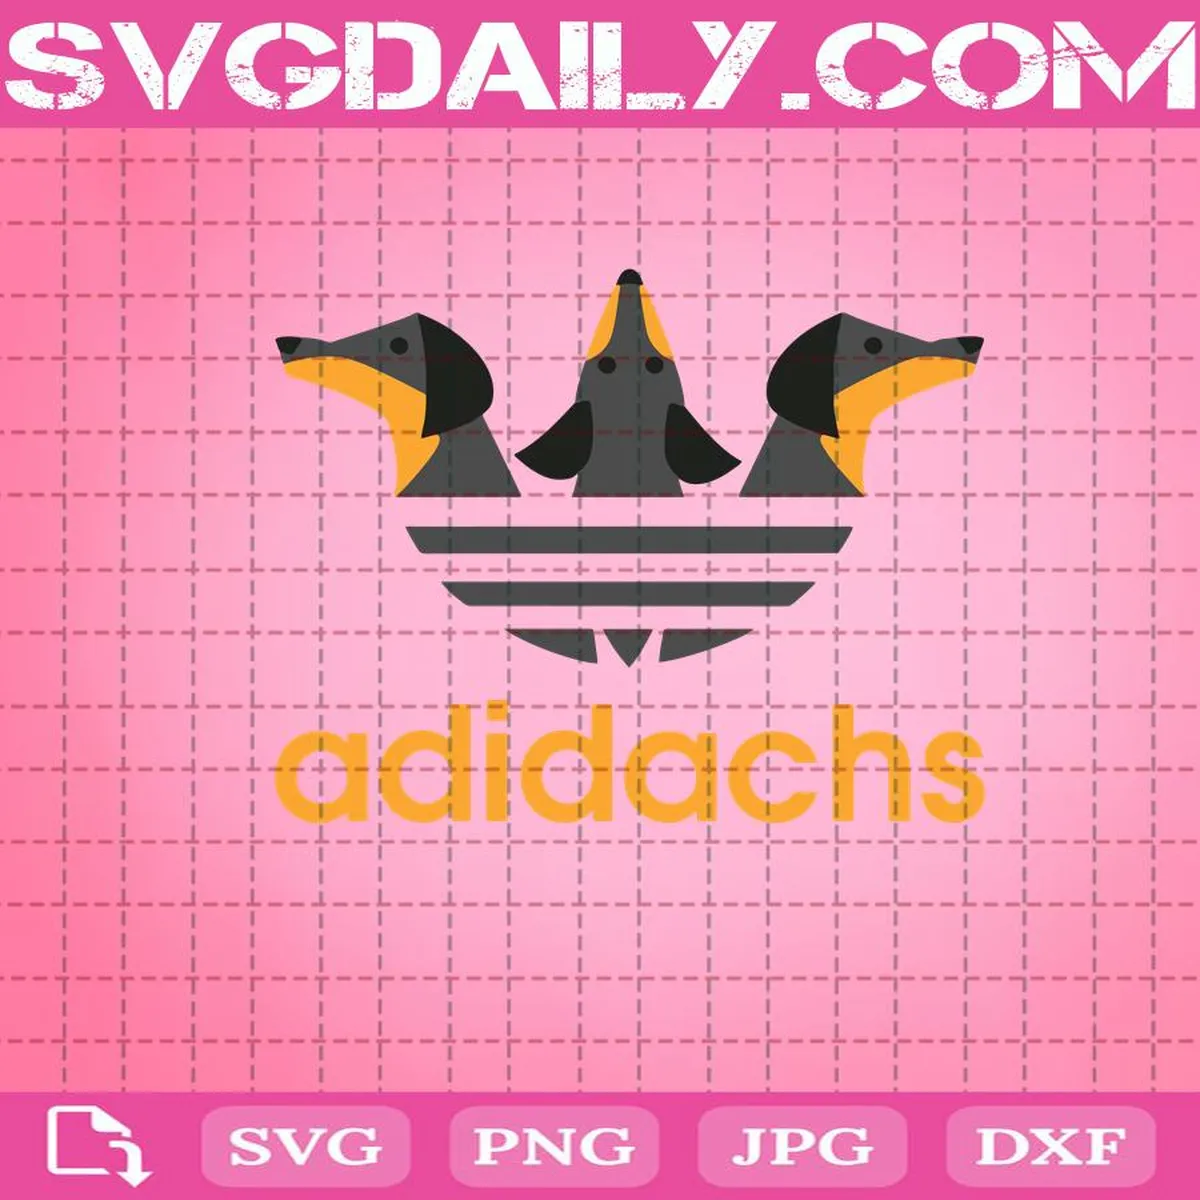 Adidas Adidachs Dachshund Funny Svg, Adidachs Svg, Adidachs Dachshund Svg, Svg Png Dxf Eps Cut File Instant Download